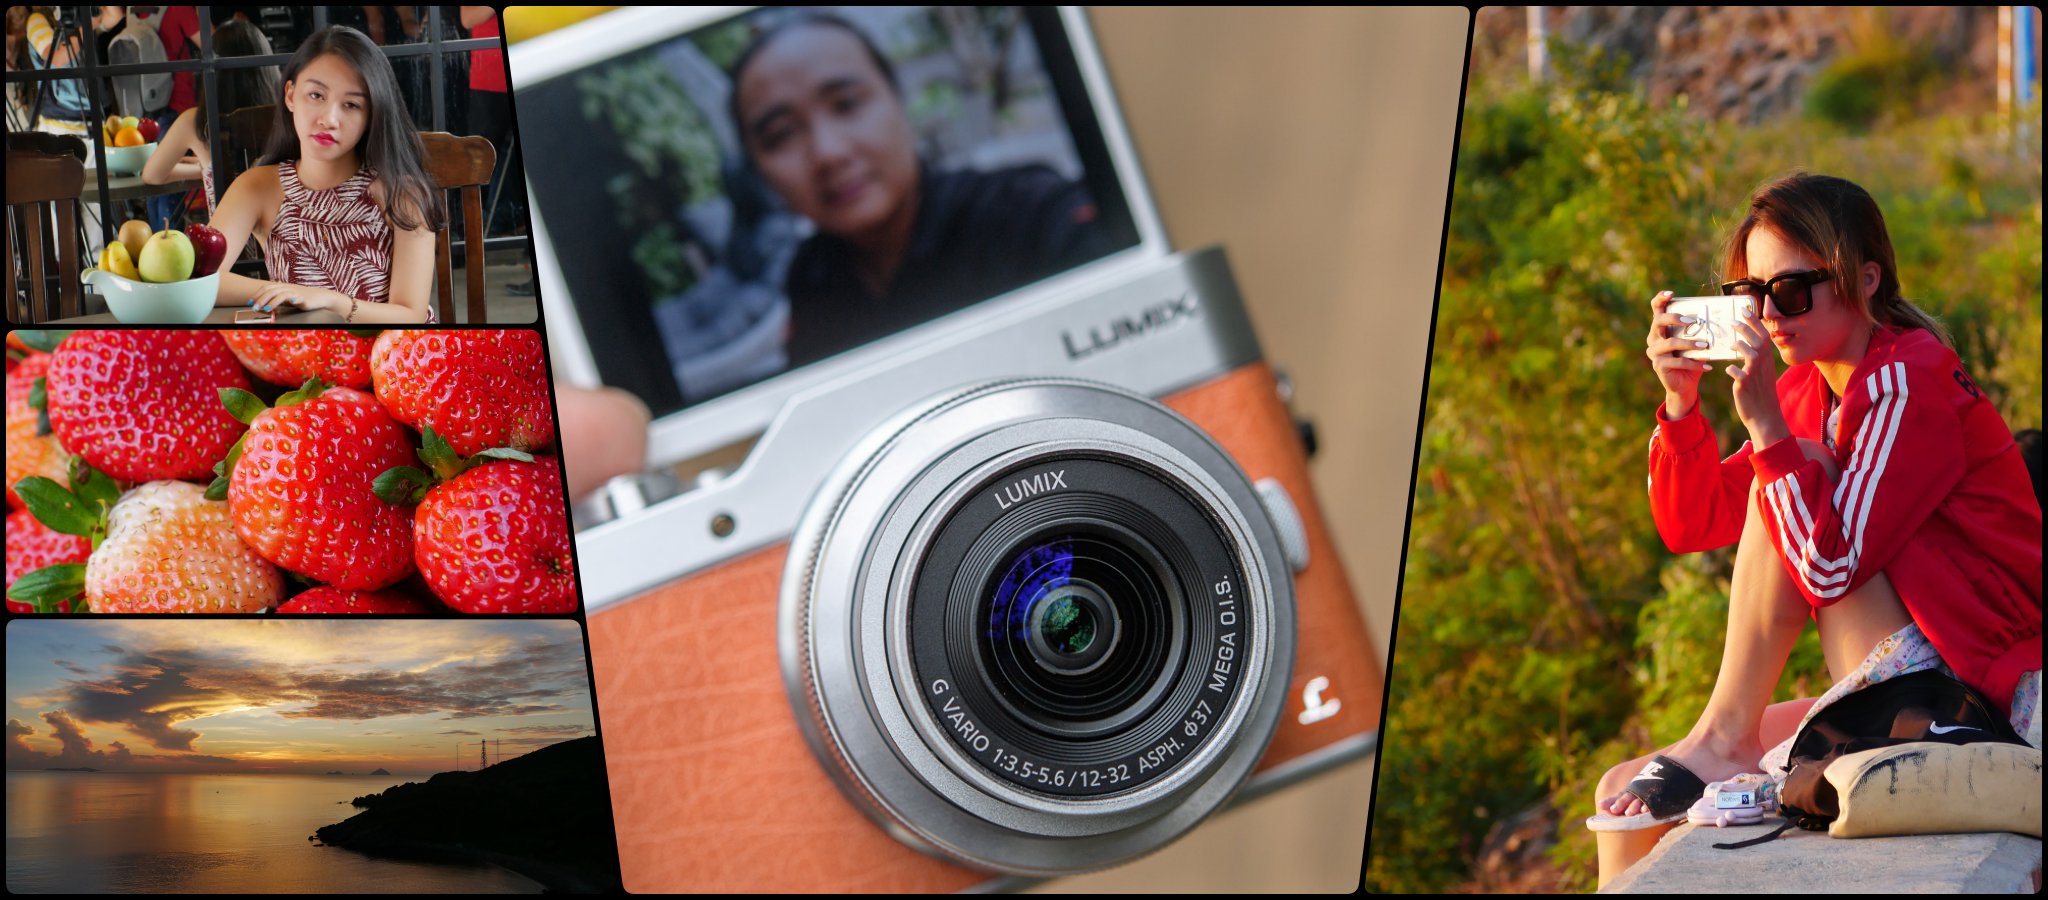 Review nhanh Camera Lumix GF9: quay video 4K, 4K Photo chất lượng tốt, máy nhỏ gọn đẹp